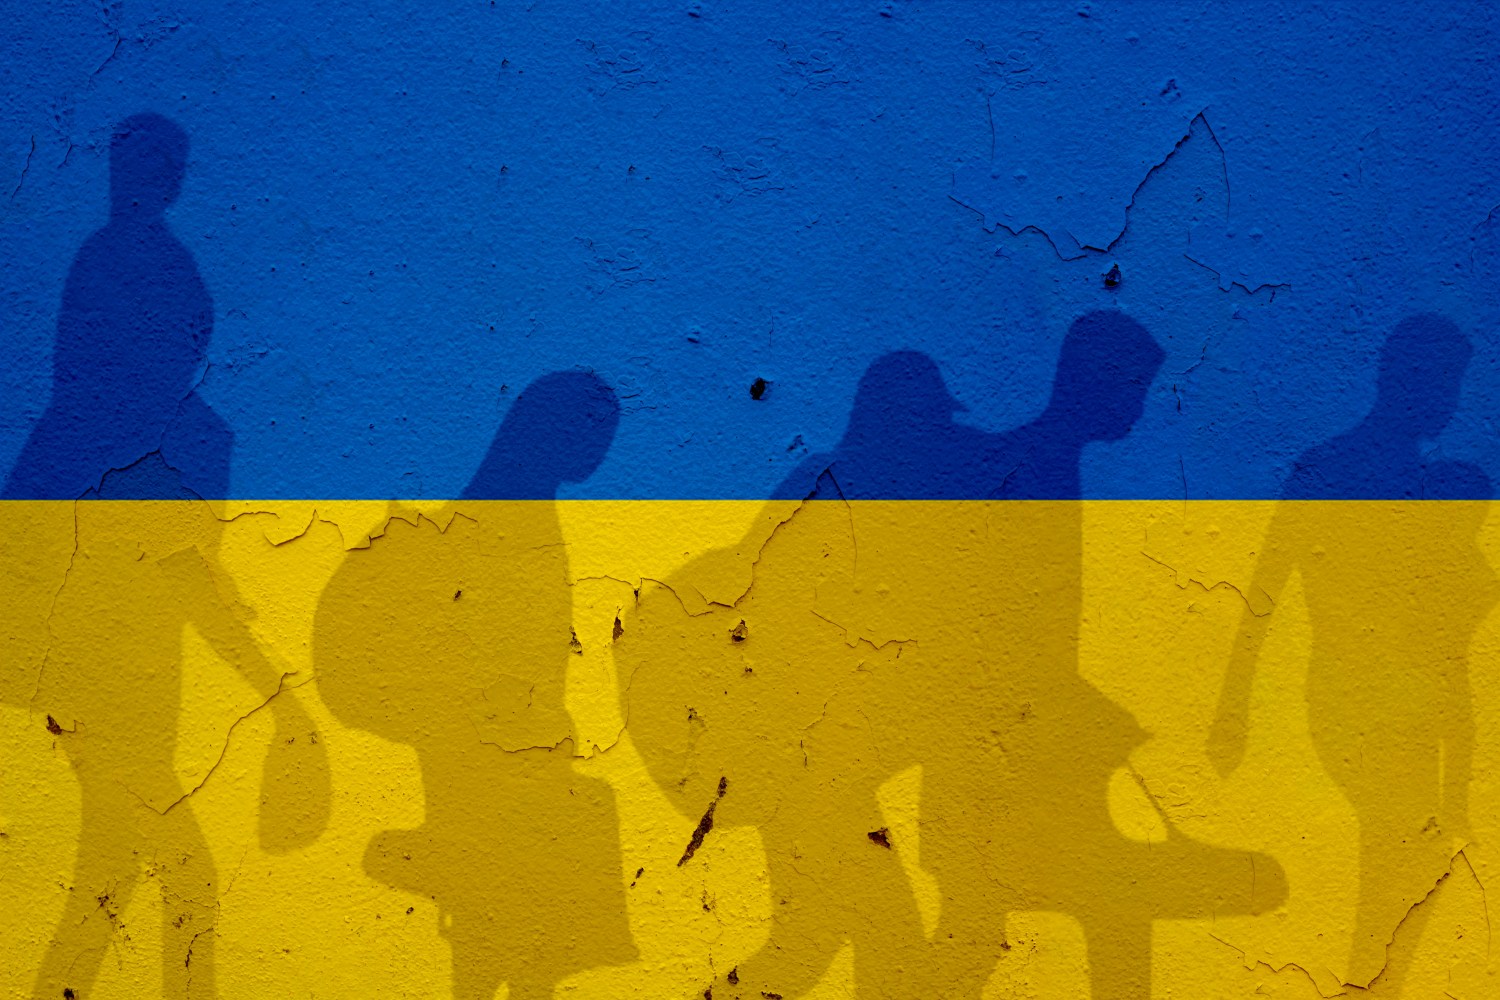 Ukraine flag + silhouettes